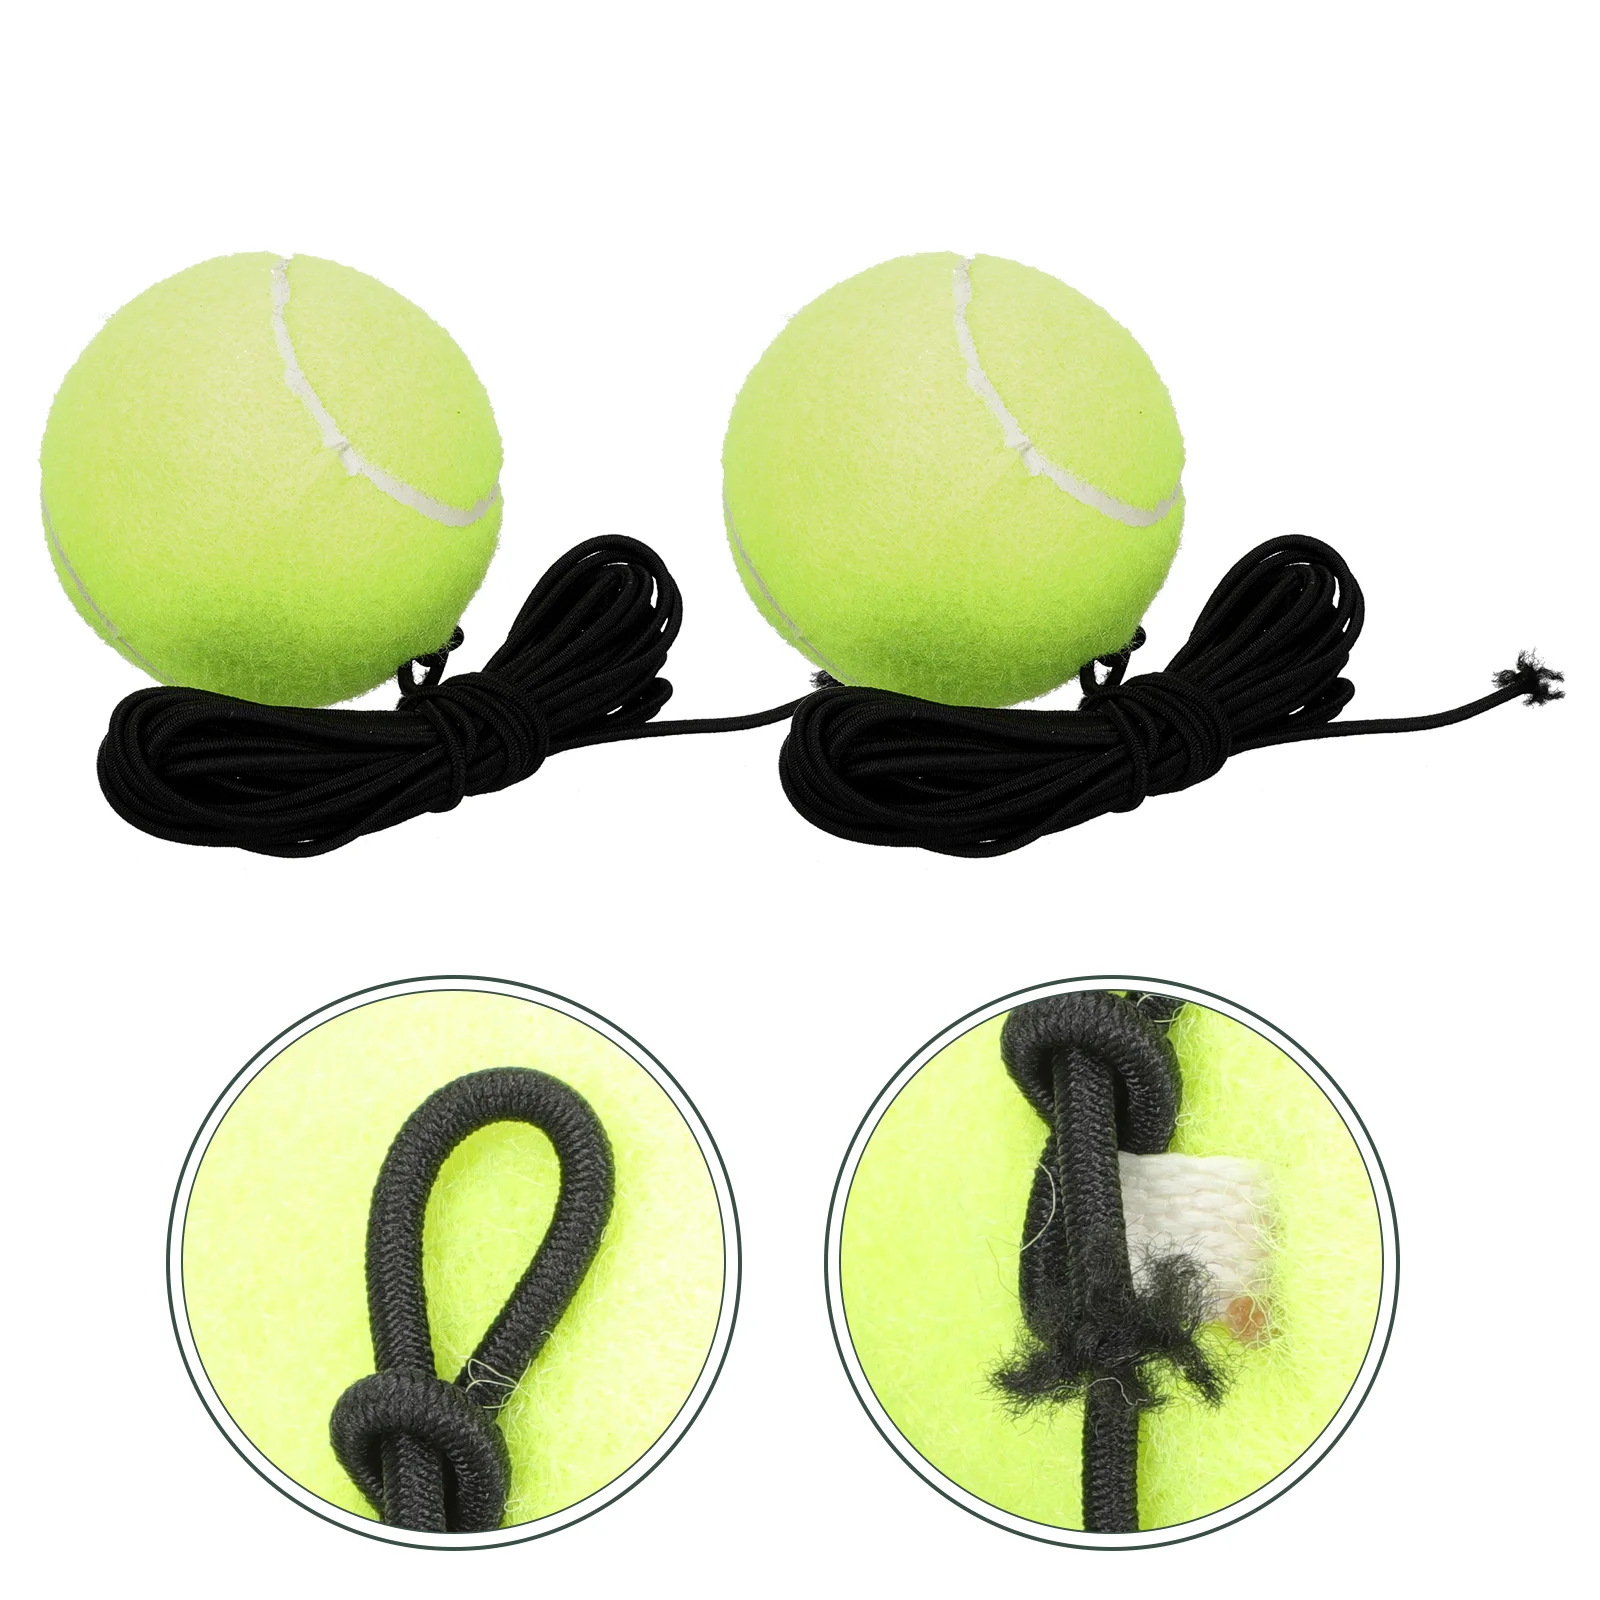 

2 шт. шерстяные теннисные тренировочные мячи для самостоятельного тенниса резиновые теннисные мячи с длинной веревкой